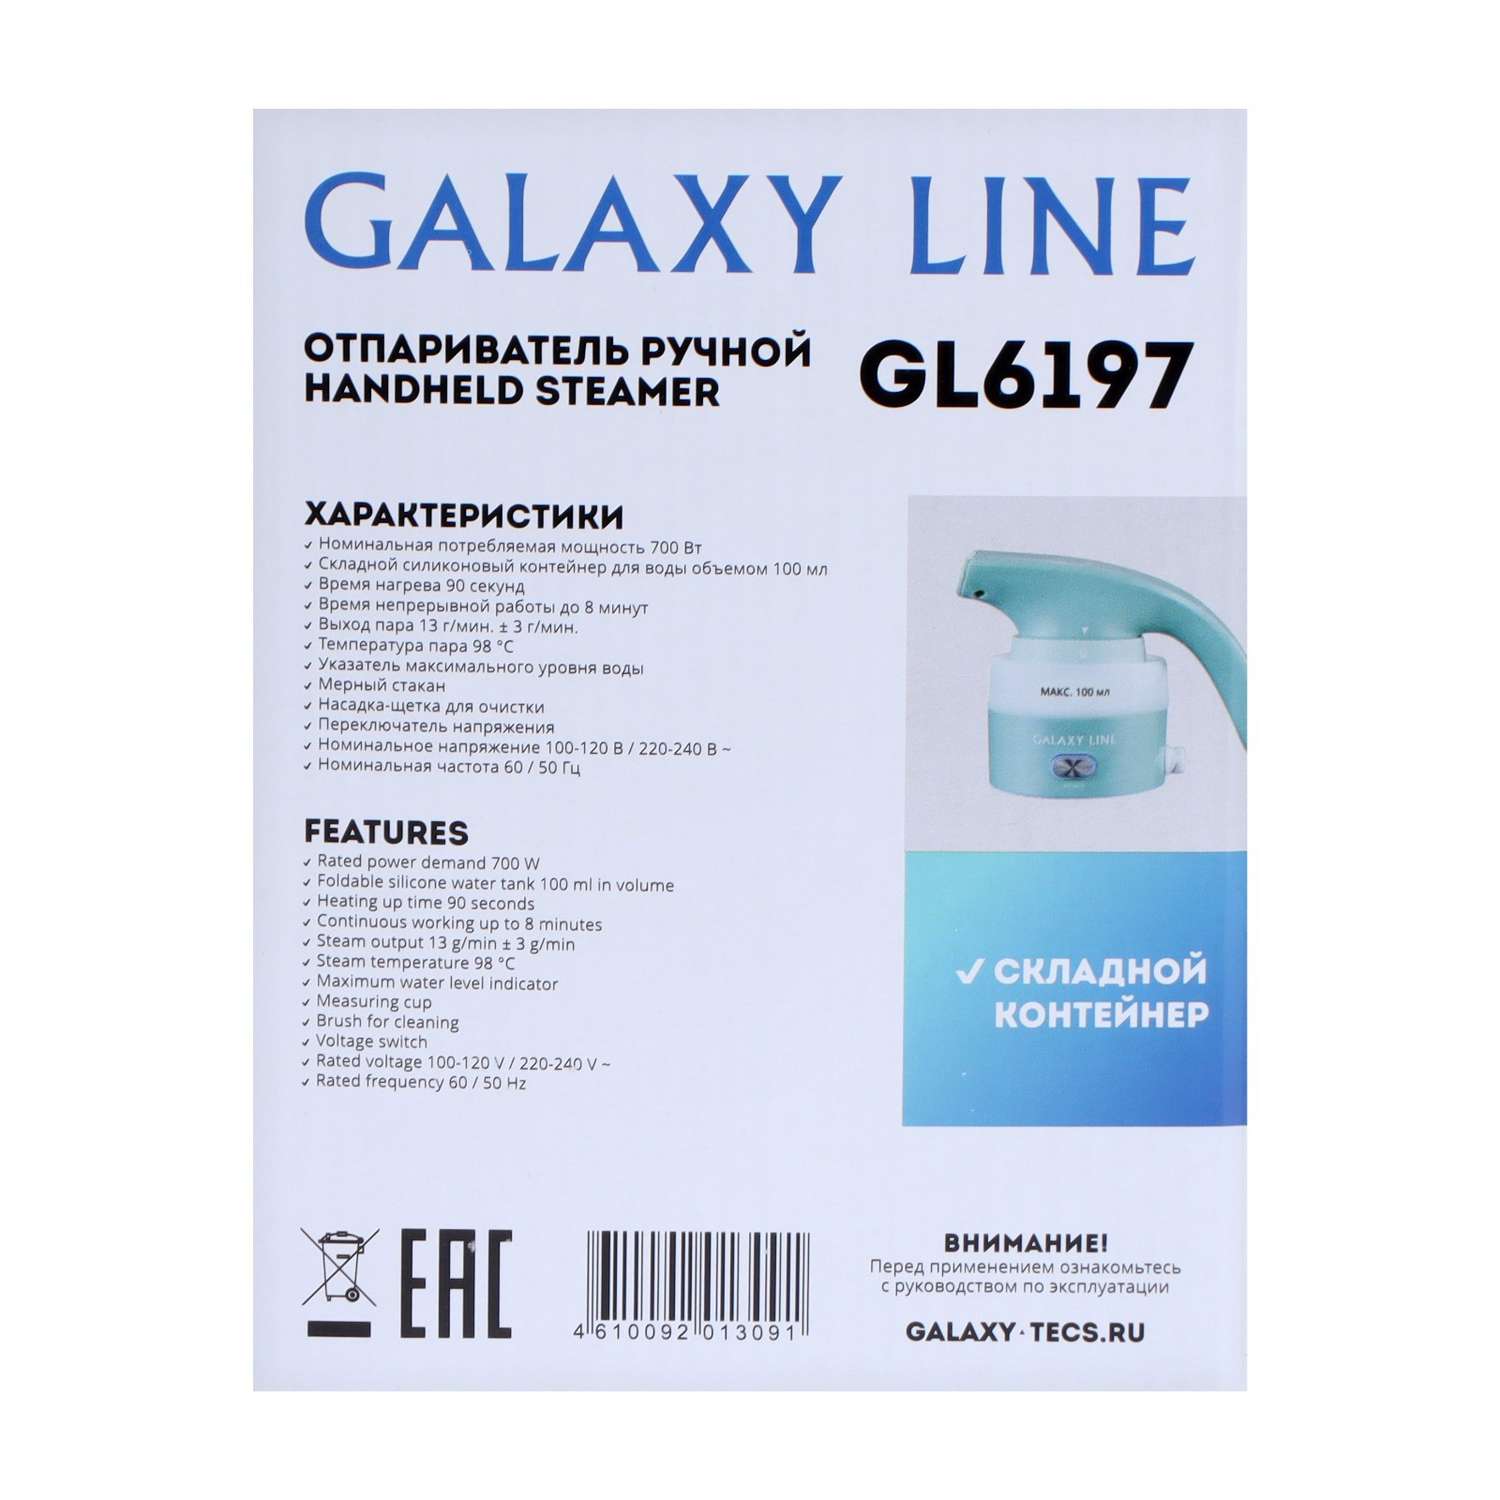 Отпариватель Sima-Land Galaxy LINE GL 6197 ручной 700 Вт 100 мл складной силиконовый контейнер - фото 10